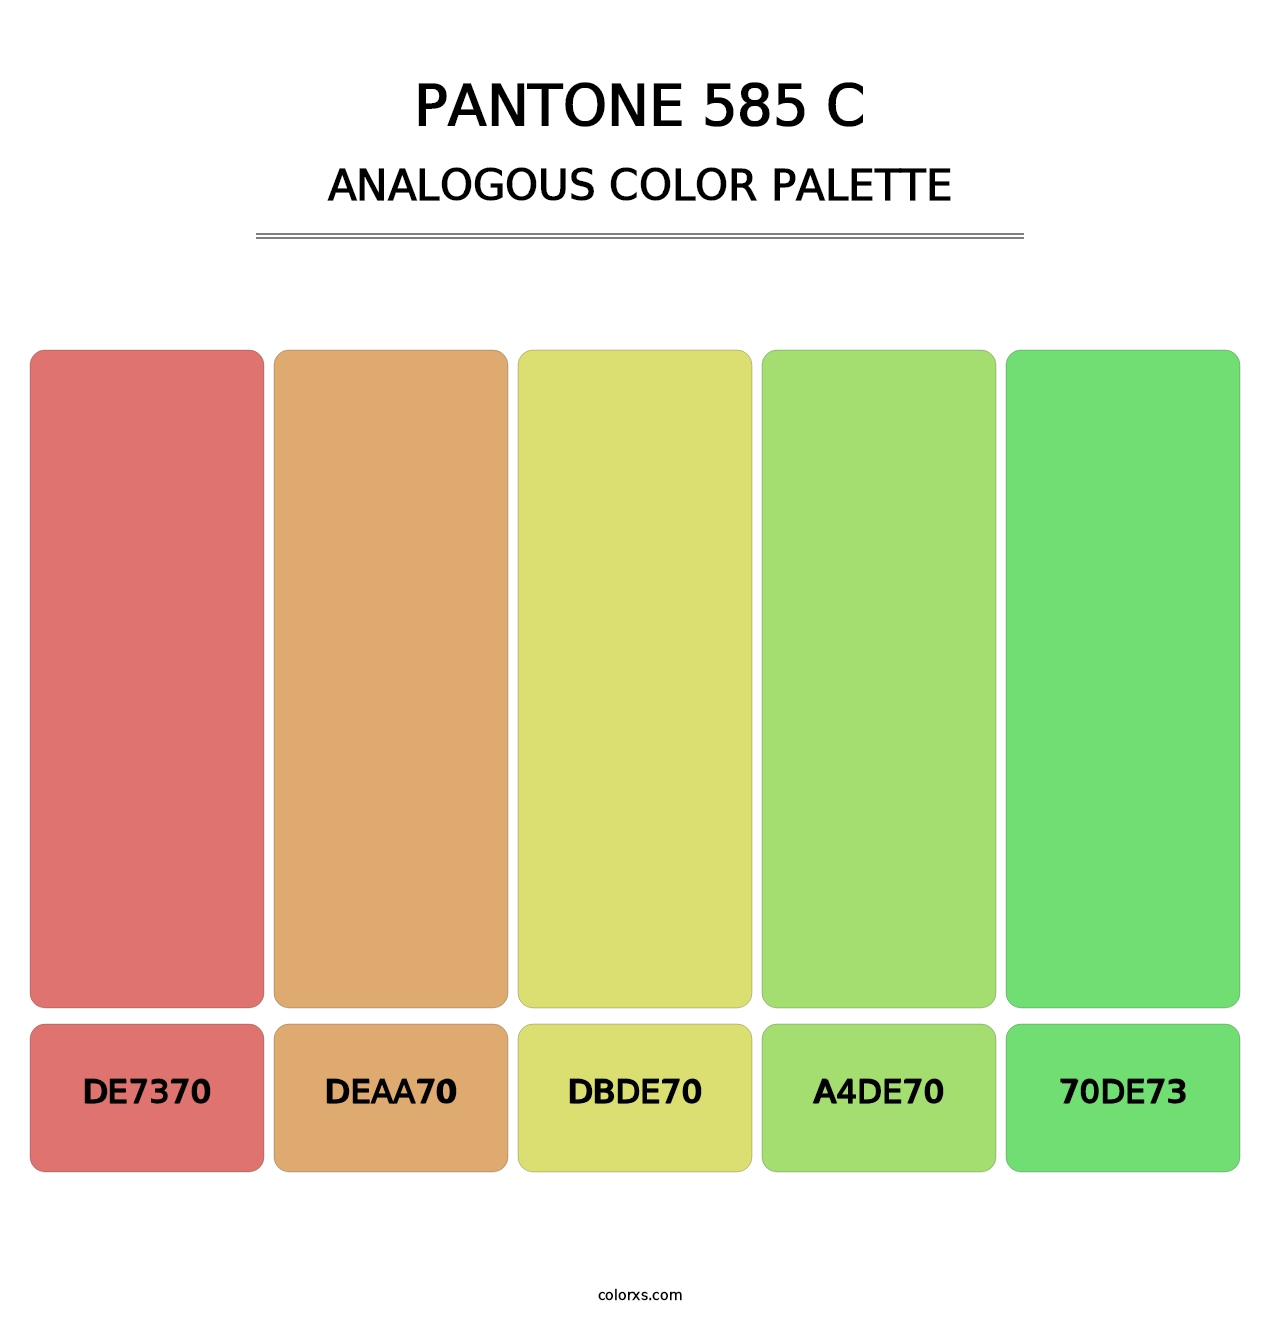 PANTONE 585 C - Analogous Color Palette